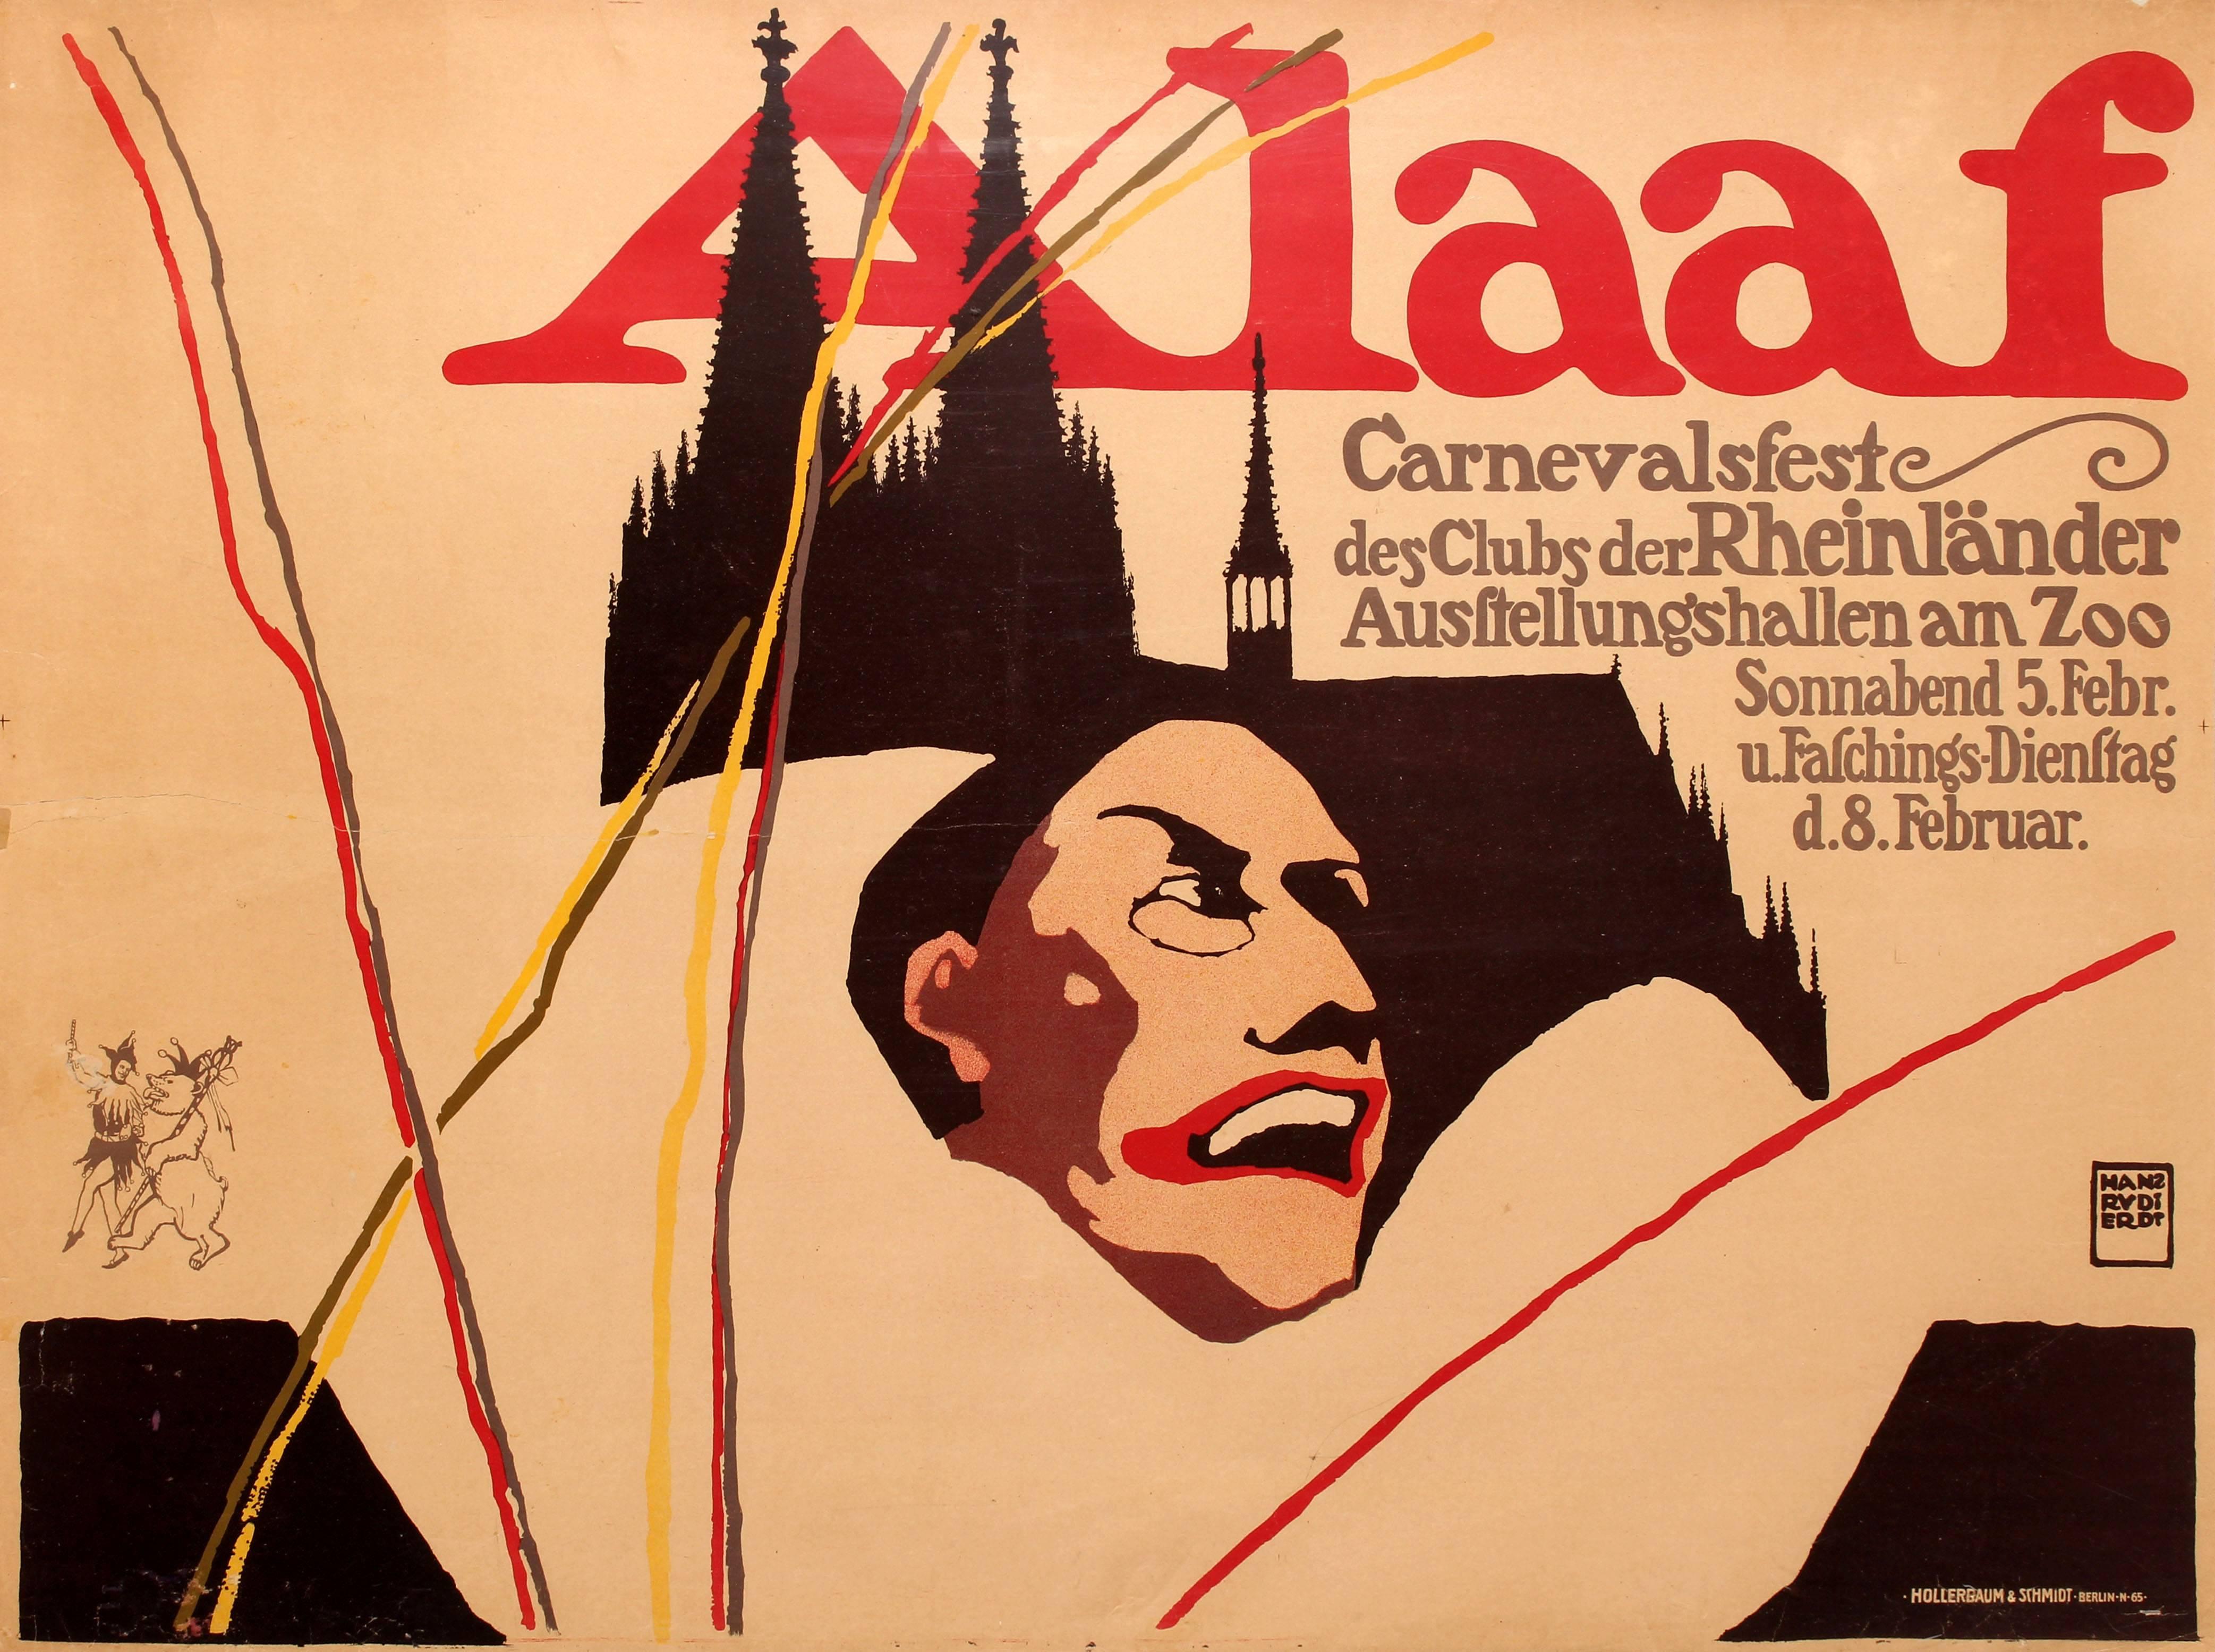 Hans Rudi Erdt Print - Original Antique Cologne Carnival Festival Poster - Alaaf - Carnevalsfeste Koln